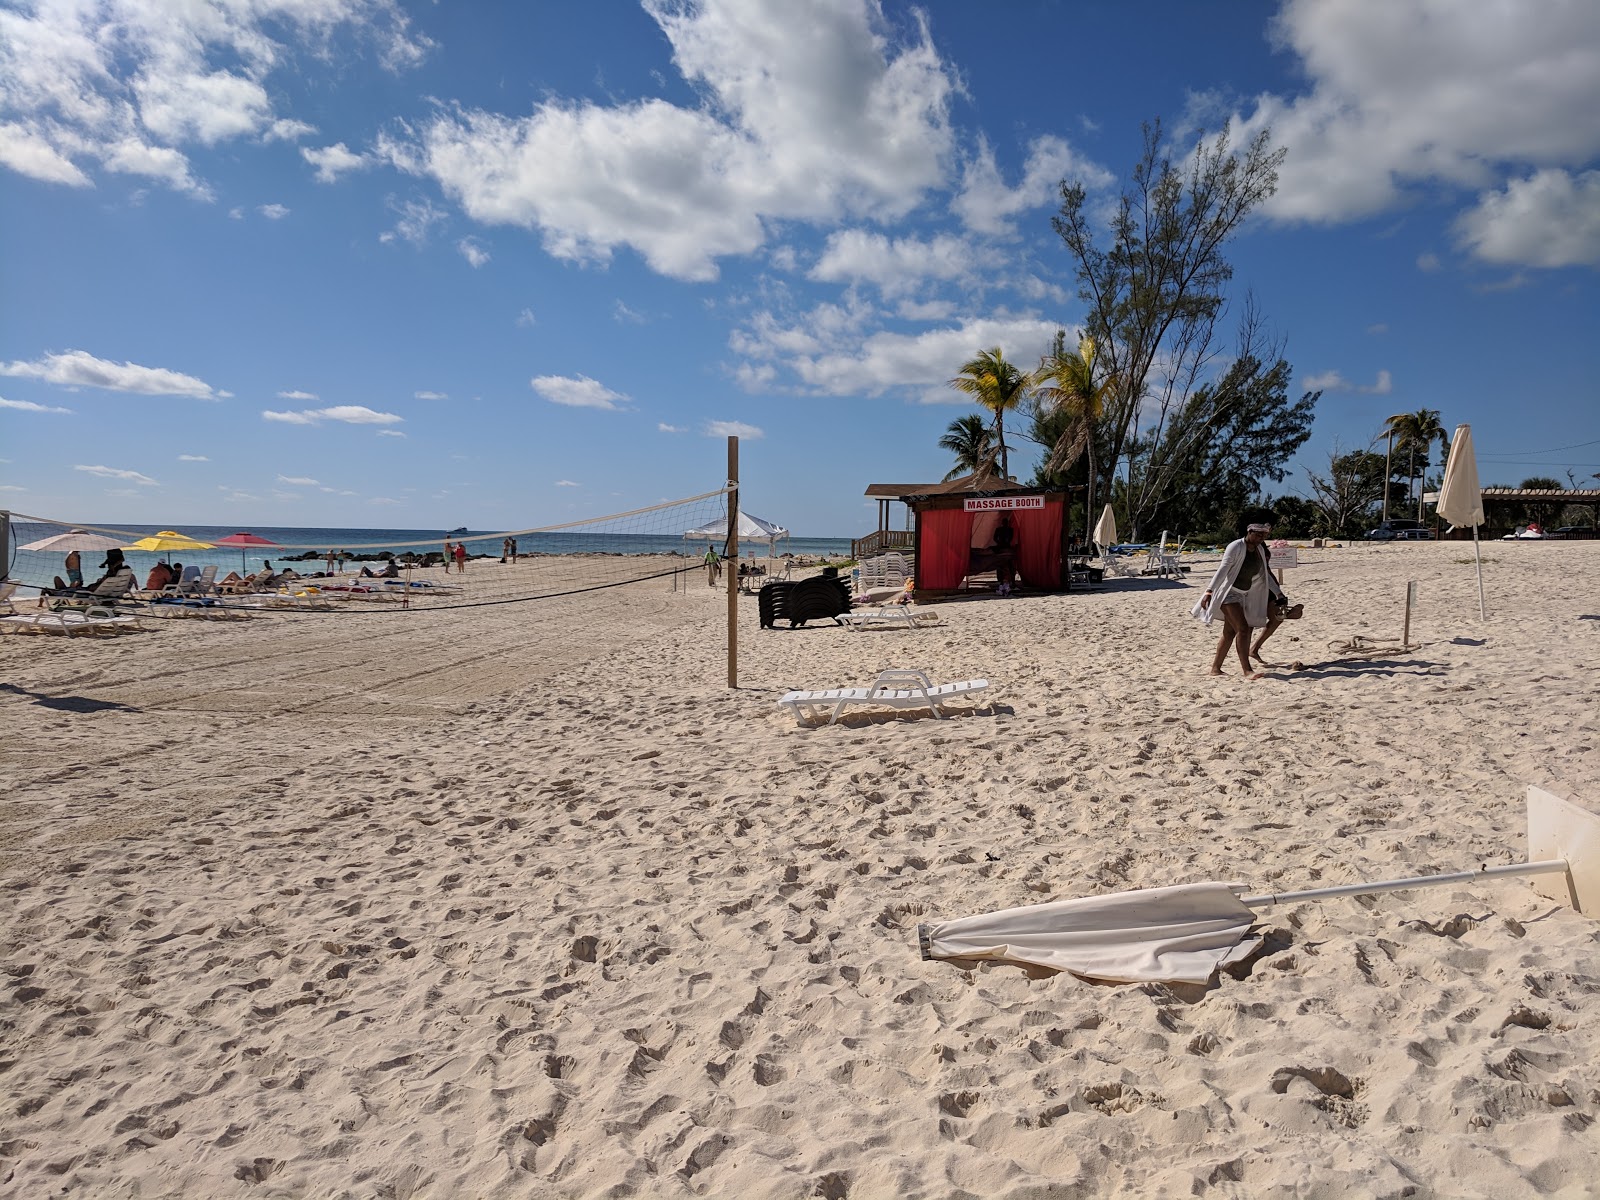 Fotografija Taino beach II priljubljeno mesto med poznavalci sprostitve